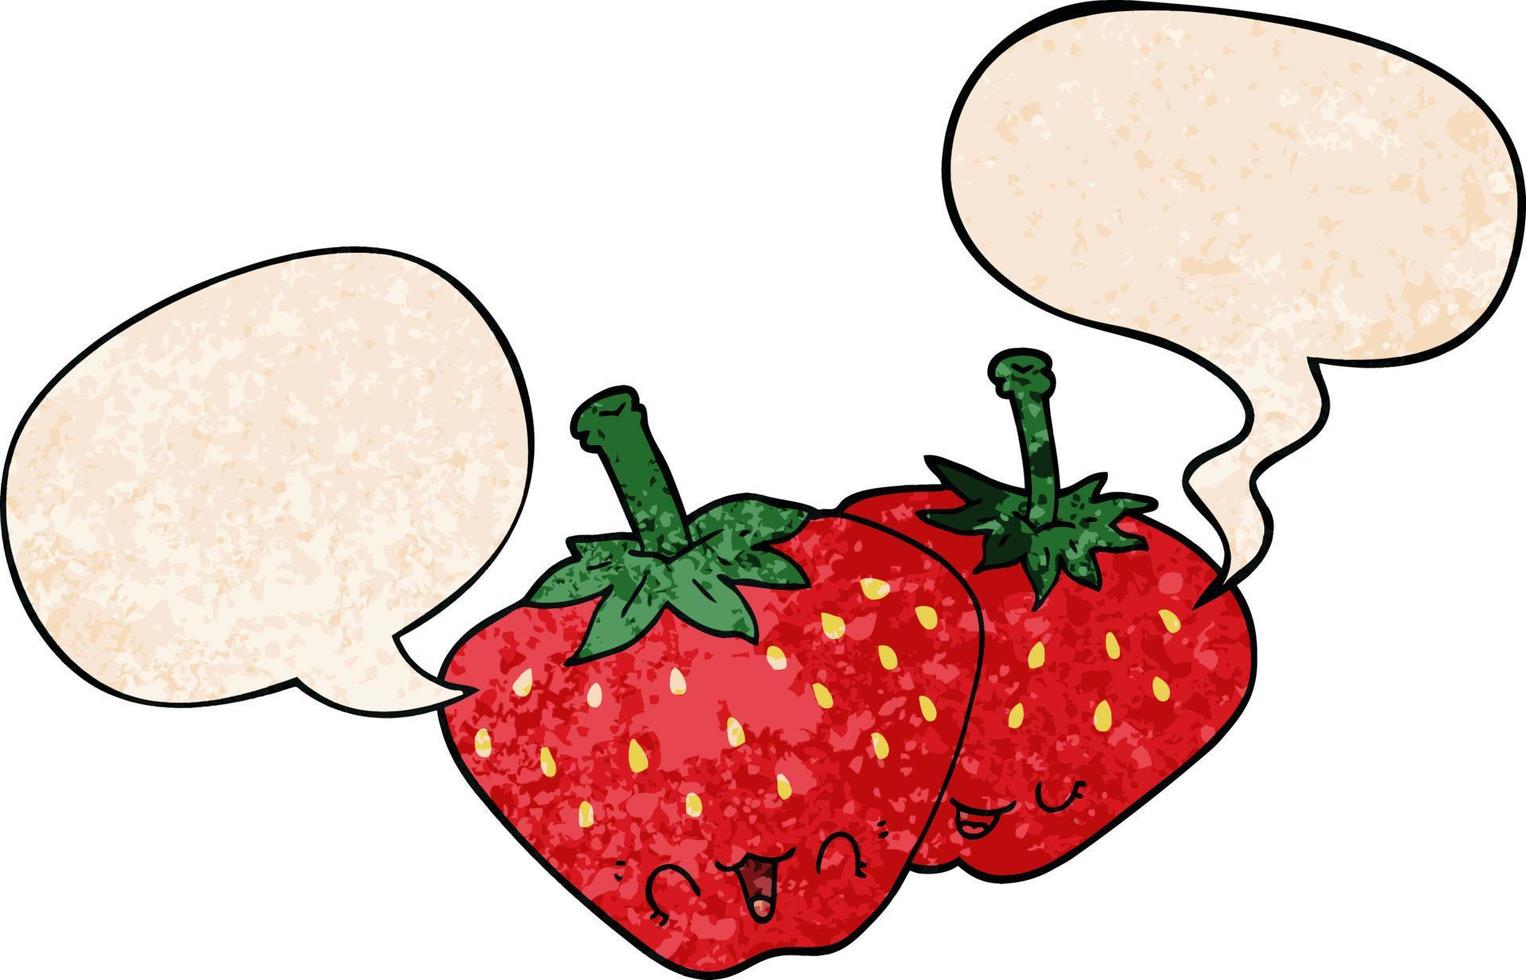 tecknade jordgubbar och pratbubbla i retro textur stil vektor